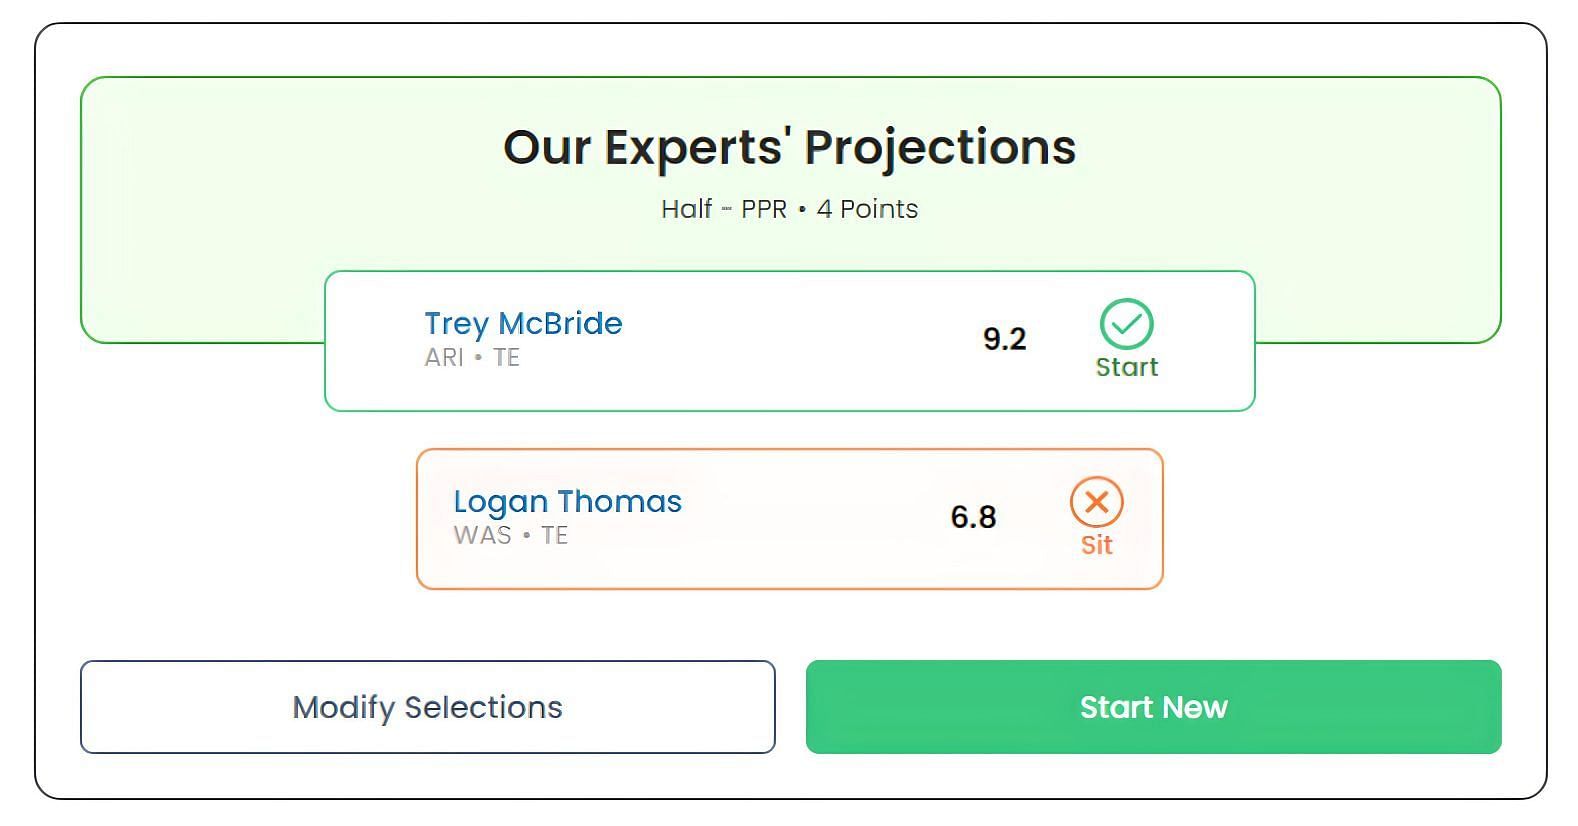 Trey McBride vs. Logan Thomas: Who to start?